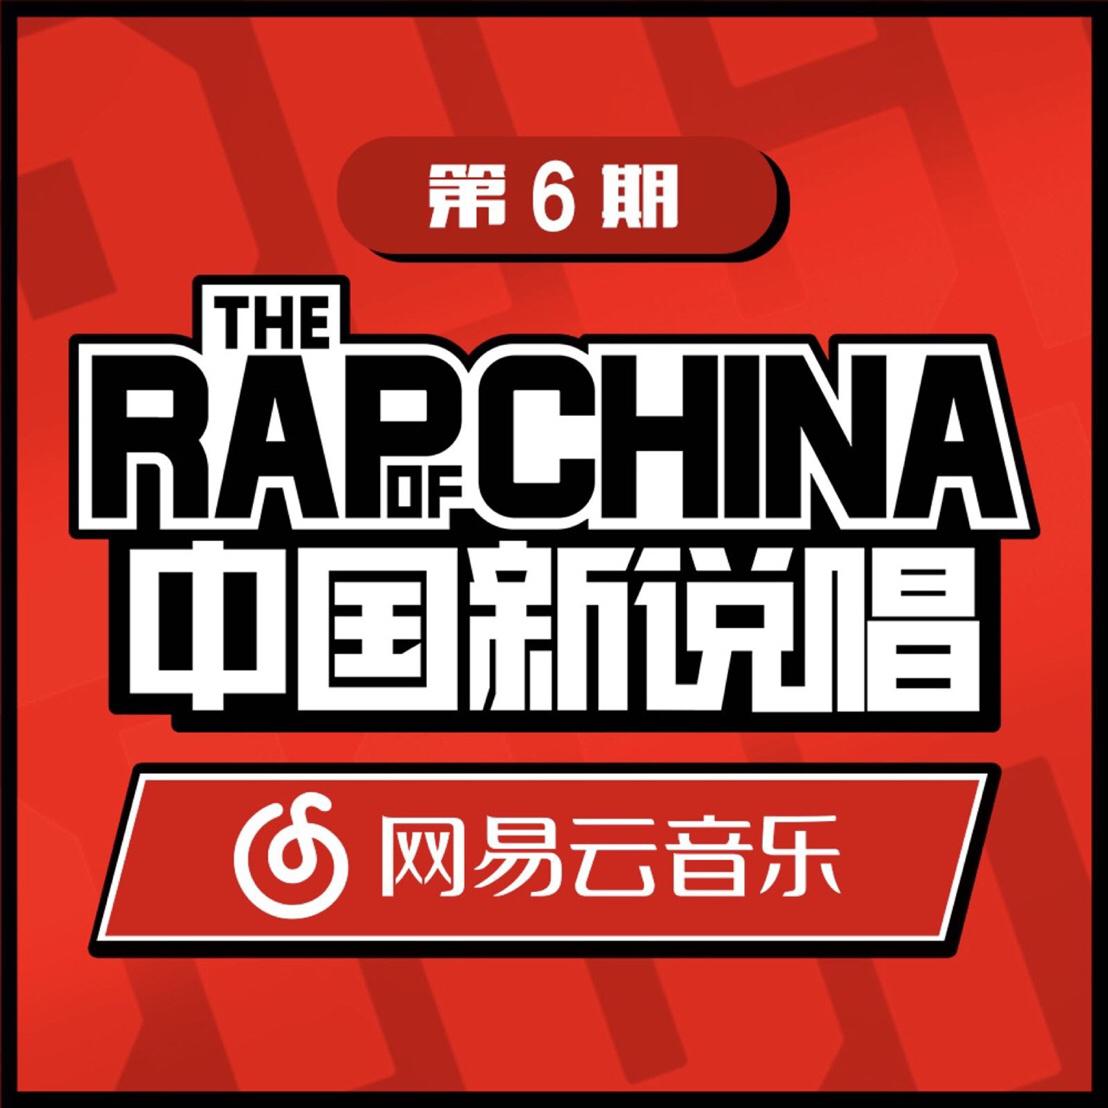 zhong guo xin shuo chang EP06 RAP01 Live